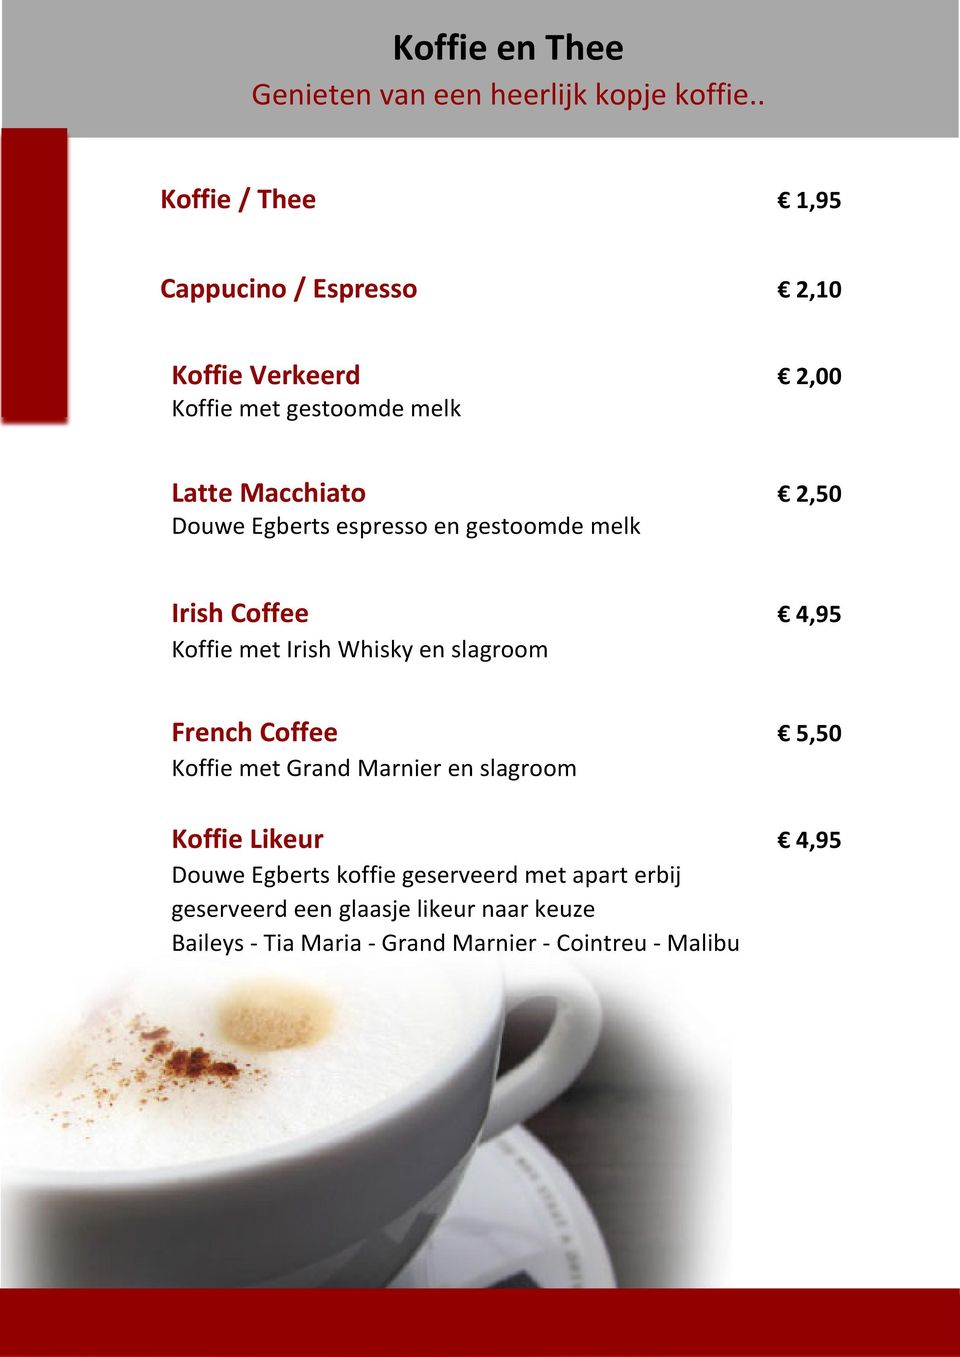 Egberts espresso en gestoomde melk Irish Coffee 4,95 Koffie met Irish Whisky en slagroom French Coffee 5,50 Koffie met